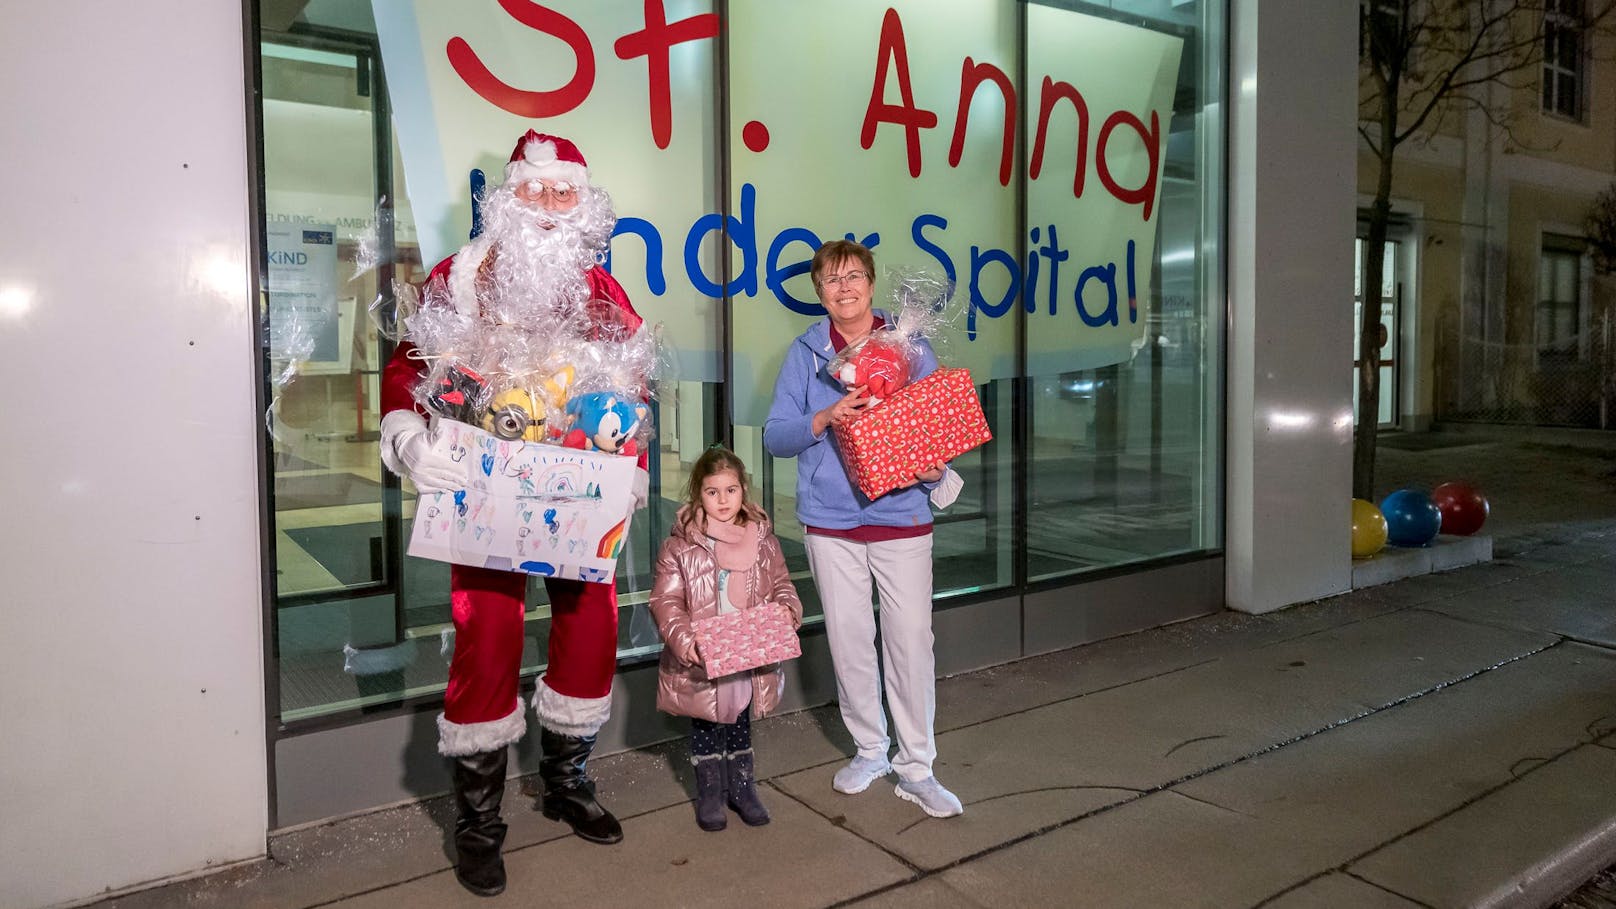 Am Mittwoch übergab der Wiener Weihnachtsmann nämlich Geschenke an das Spital.